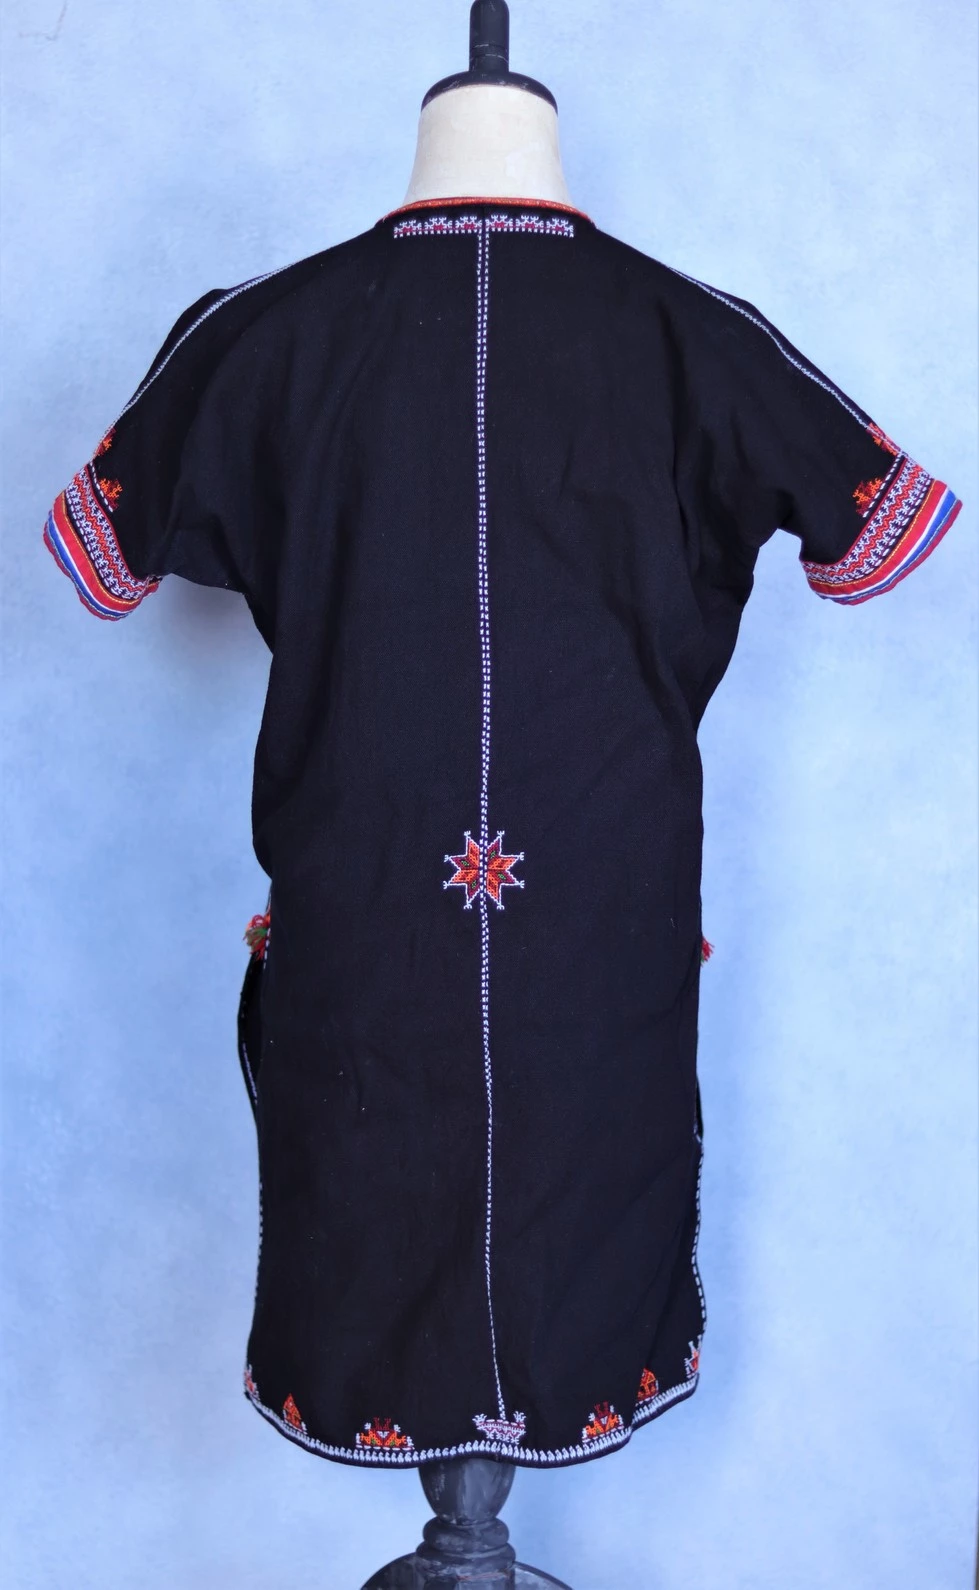 誠実 民族 刺繍 ジャケット 織り 黒 スパンコール エスニック パッチ